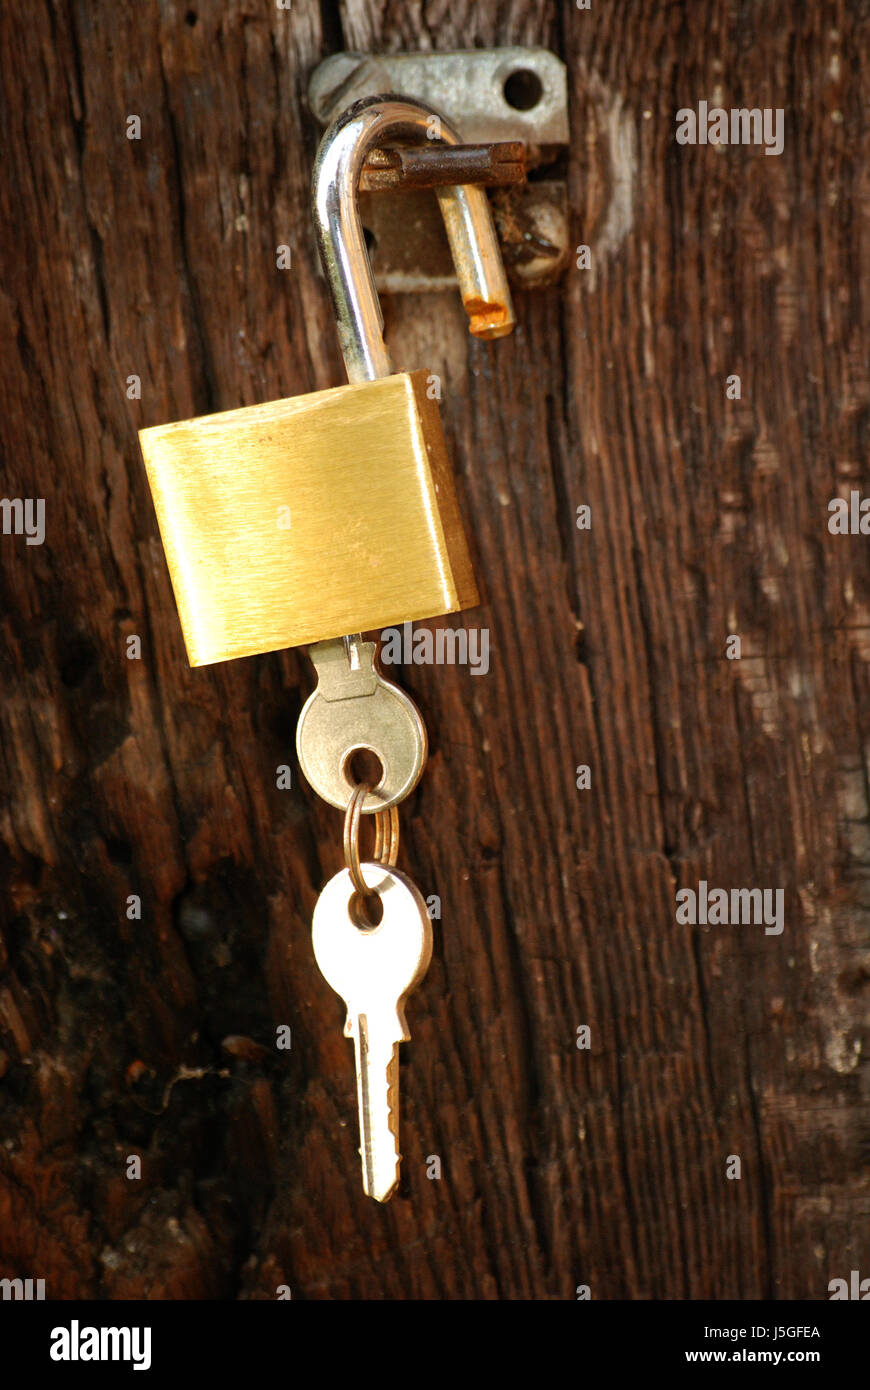 Bloccare l'anello privato obiettivo passaggio archgway gate gantry argento porta aperta anello chiave Foto Stock